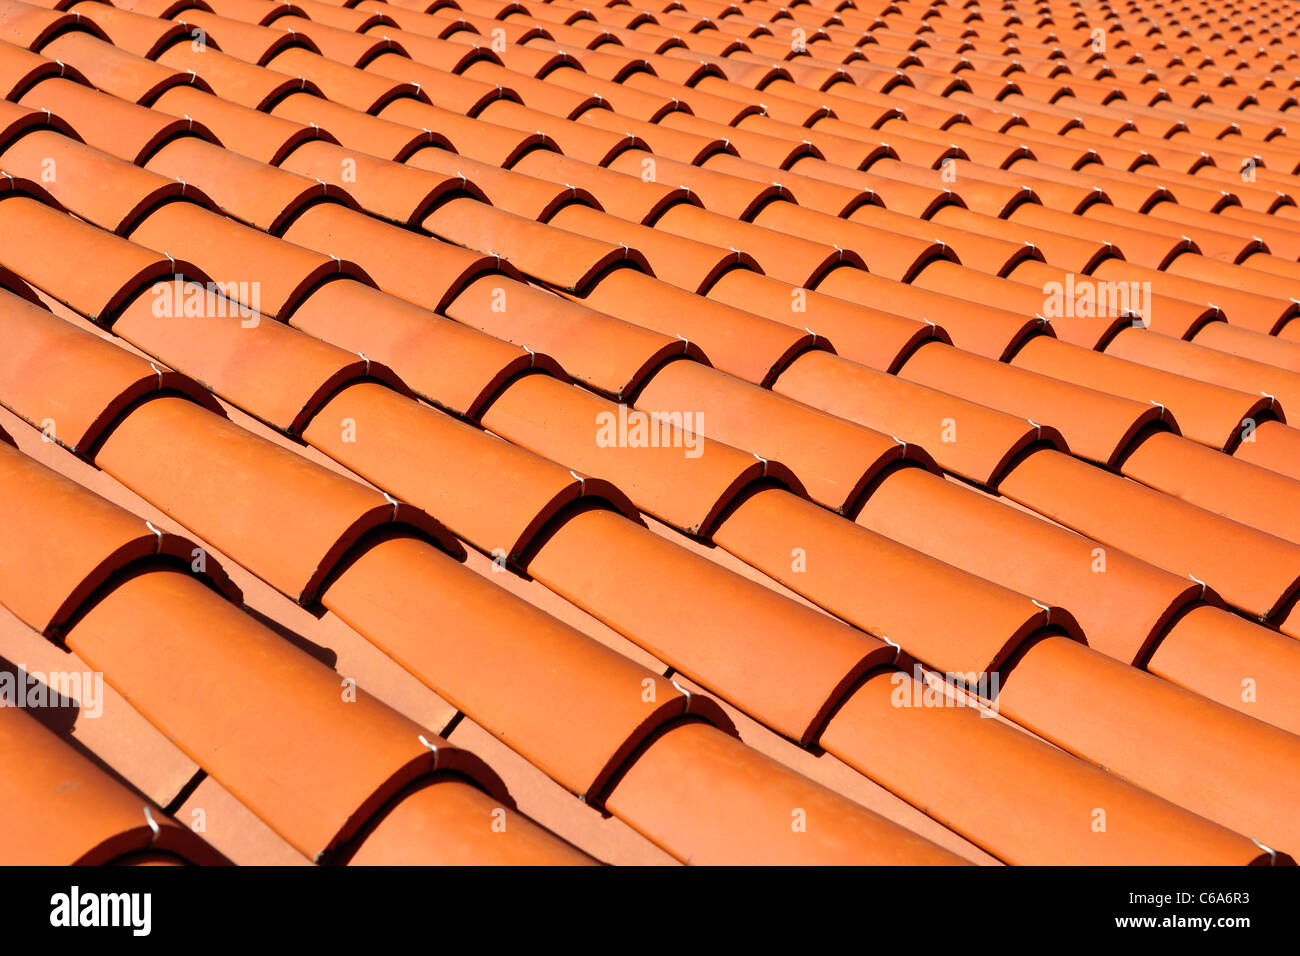 Las tejas de naranja hecho de un material cerámico Foto de stock